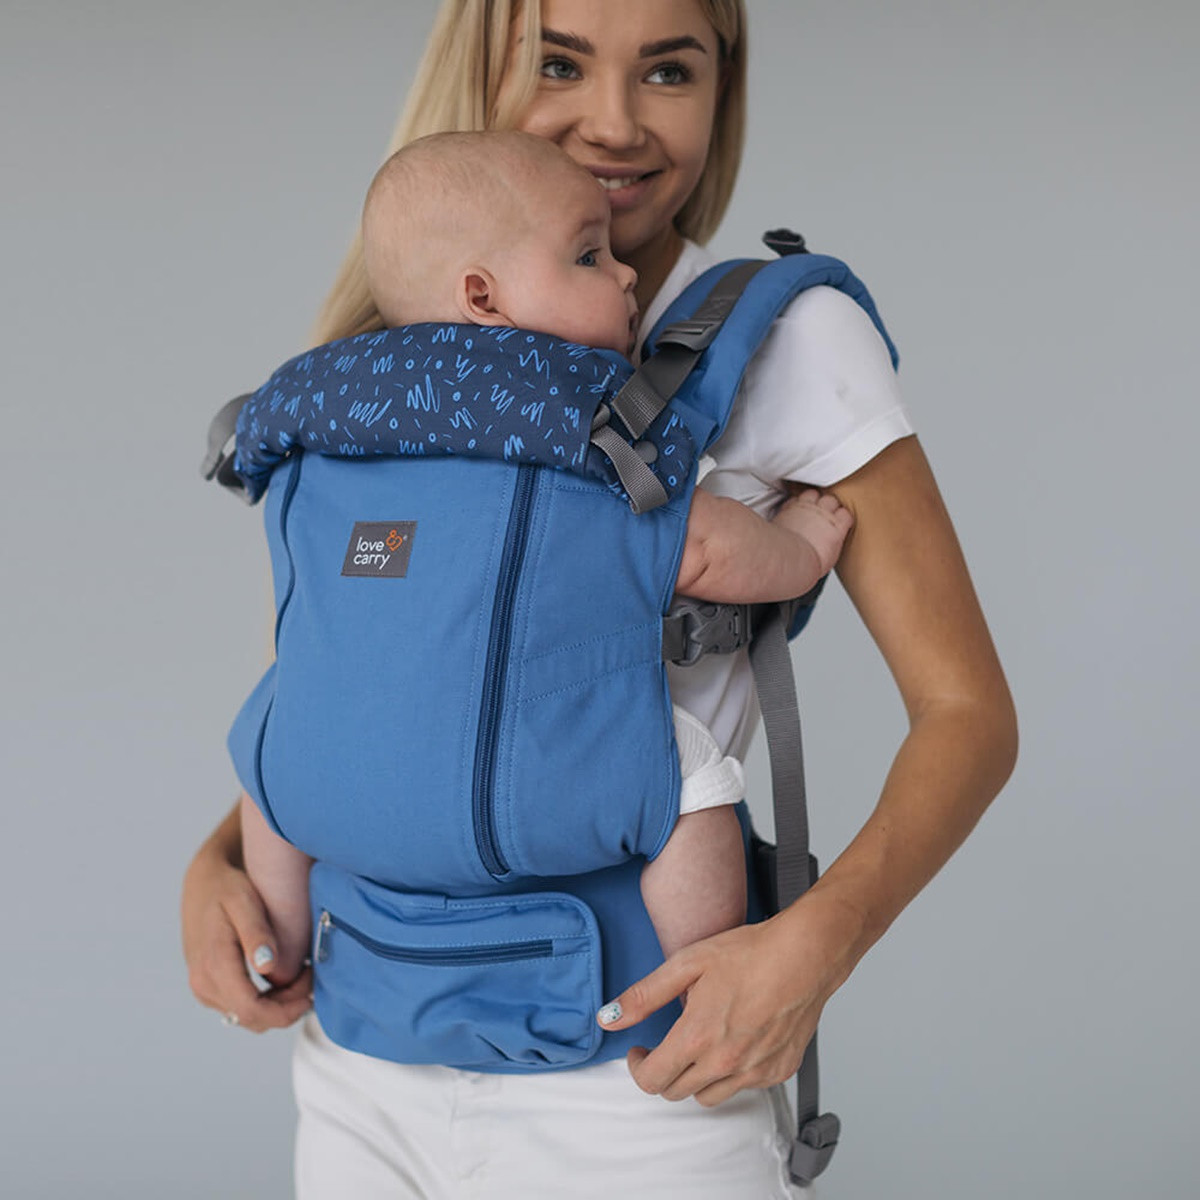 Porte-bébé physiologique AIR X Carbon Love & Carry